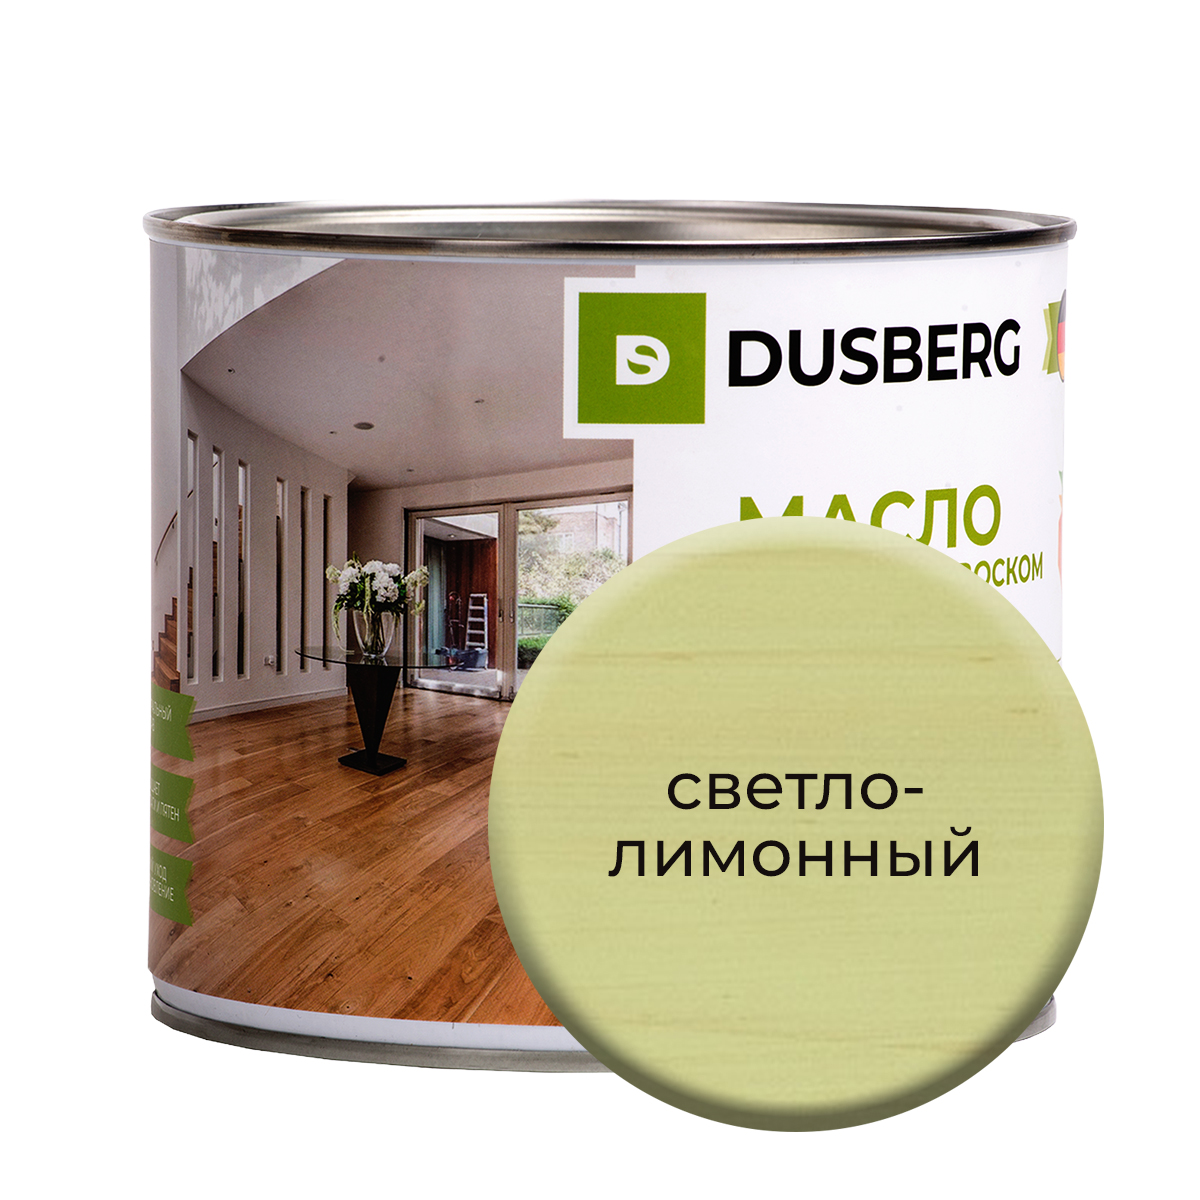 Масло Dusberg для стен на бесцветной основе, 750 мл Светло-лимонный масло dusberg для стен на бесцветной основе 750 мл прозрачный светло зеленый